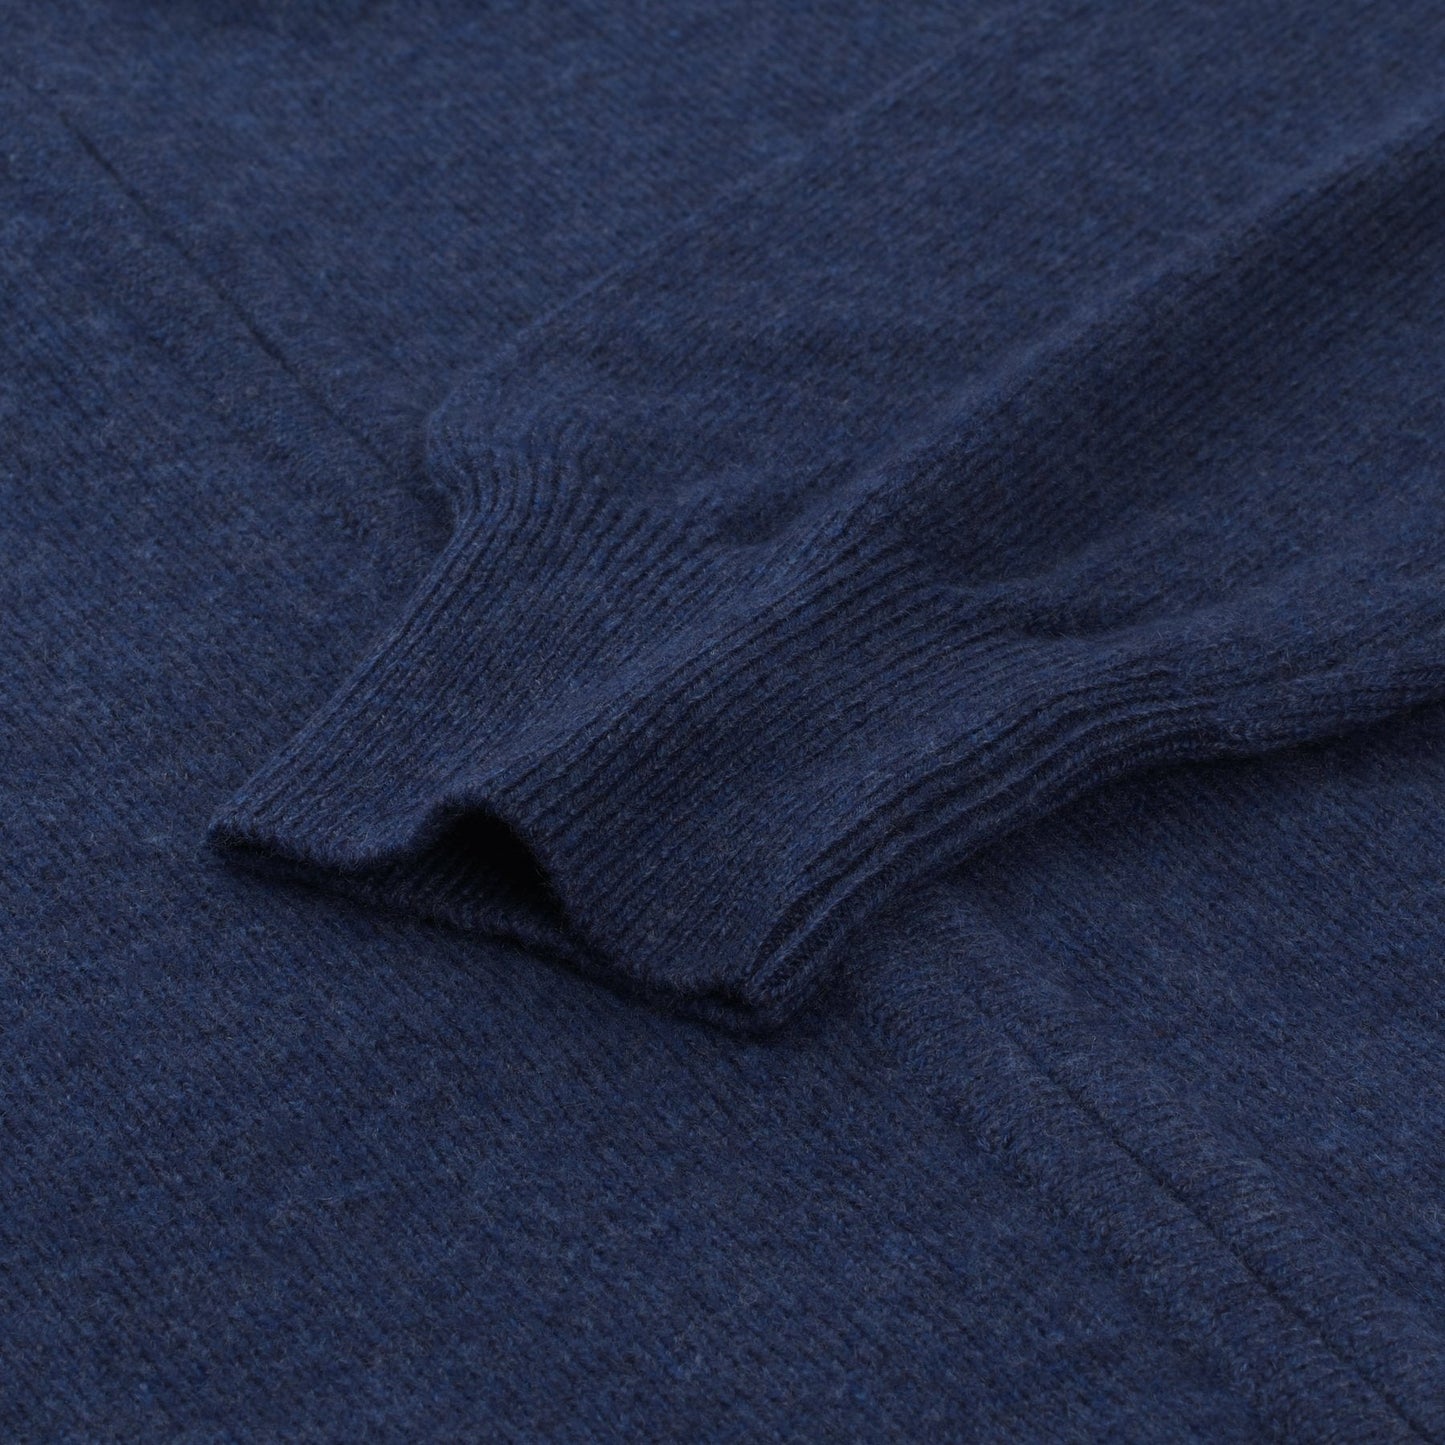 Piacenza Cashmere Zip-Up Cashmere Sweater in Blue - SARTALE